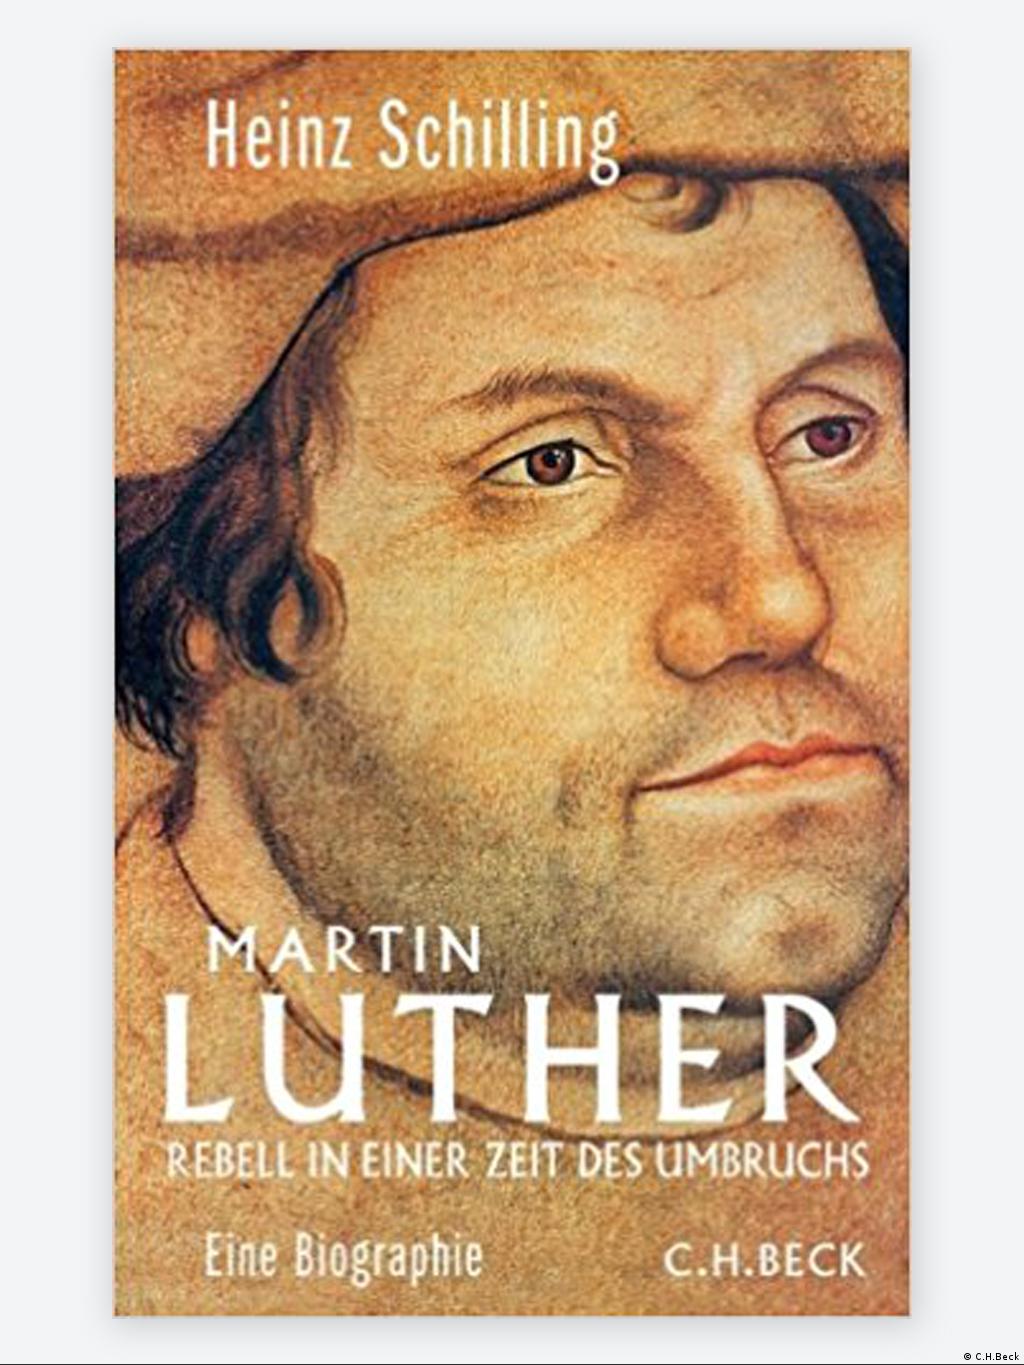 5 Luther Bucher Zum Reformationsjubilaum I Bucher Dw 31 10 2017